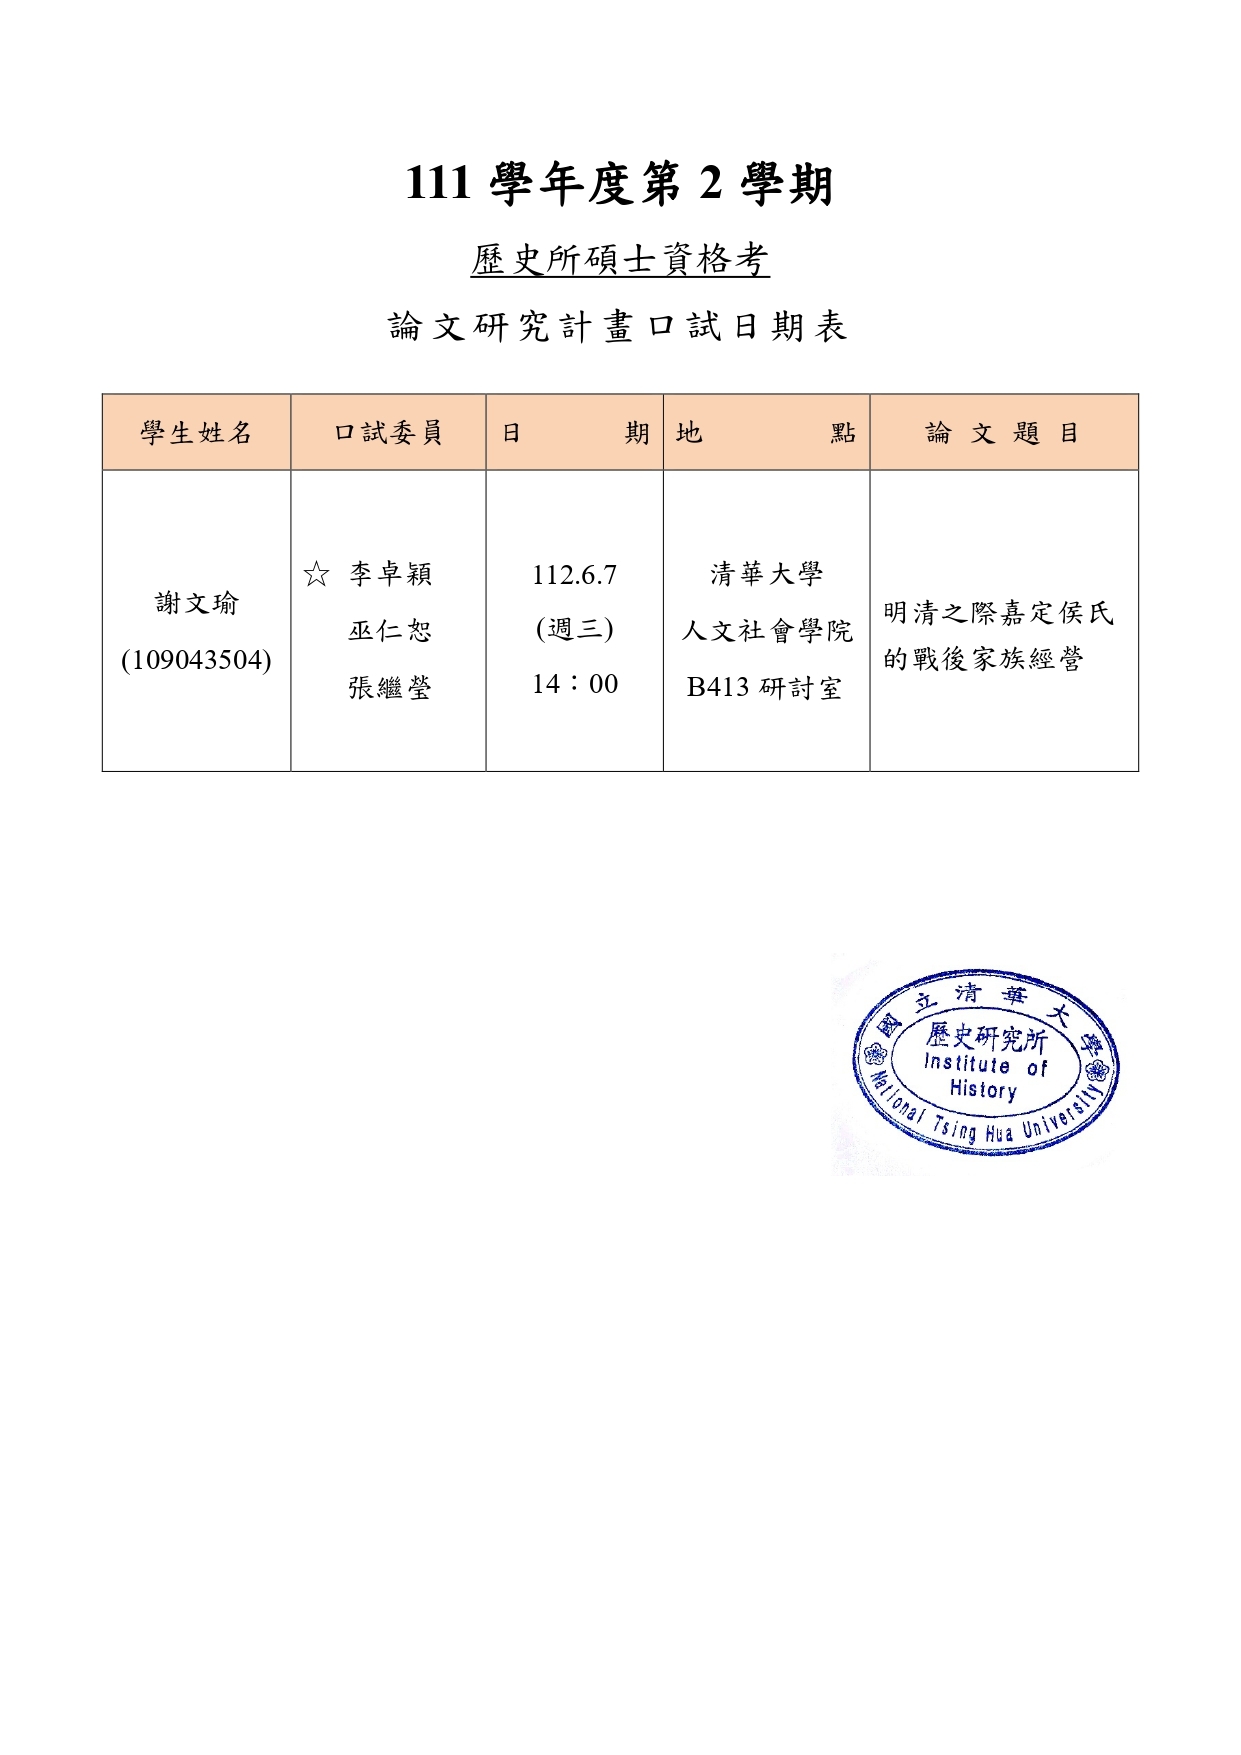 112年6月7日碩士研究計畫考試公告-謝文瑜_page-0001